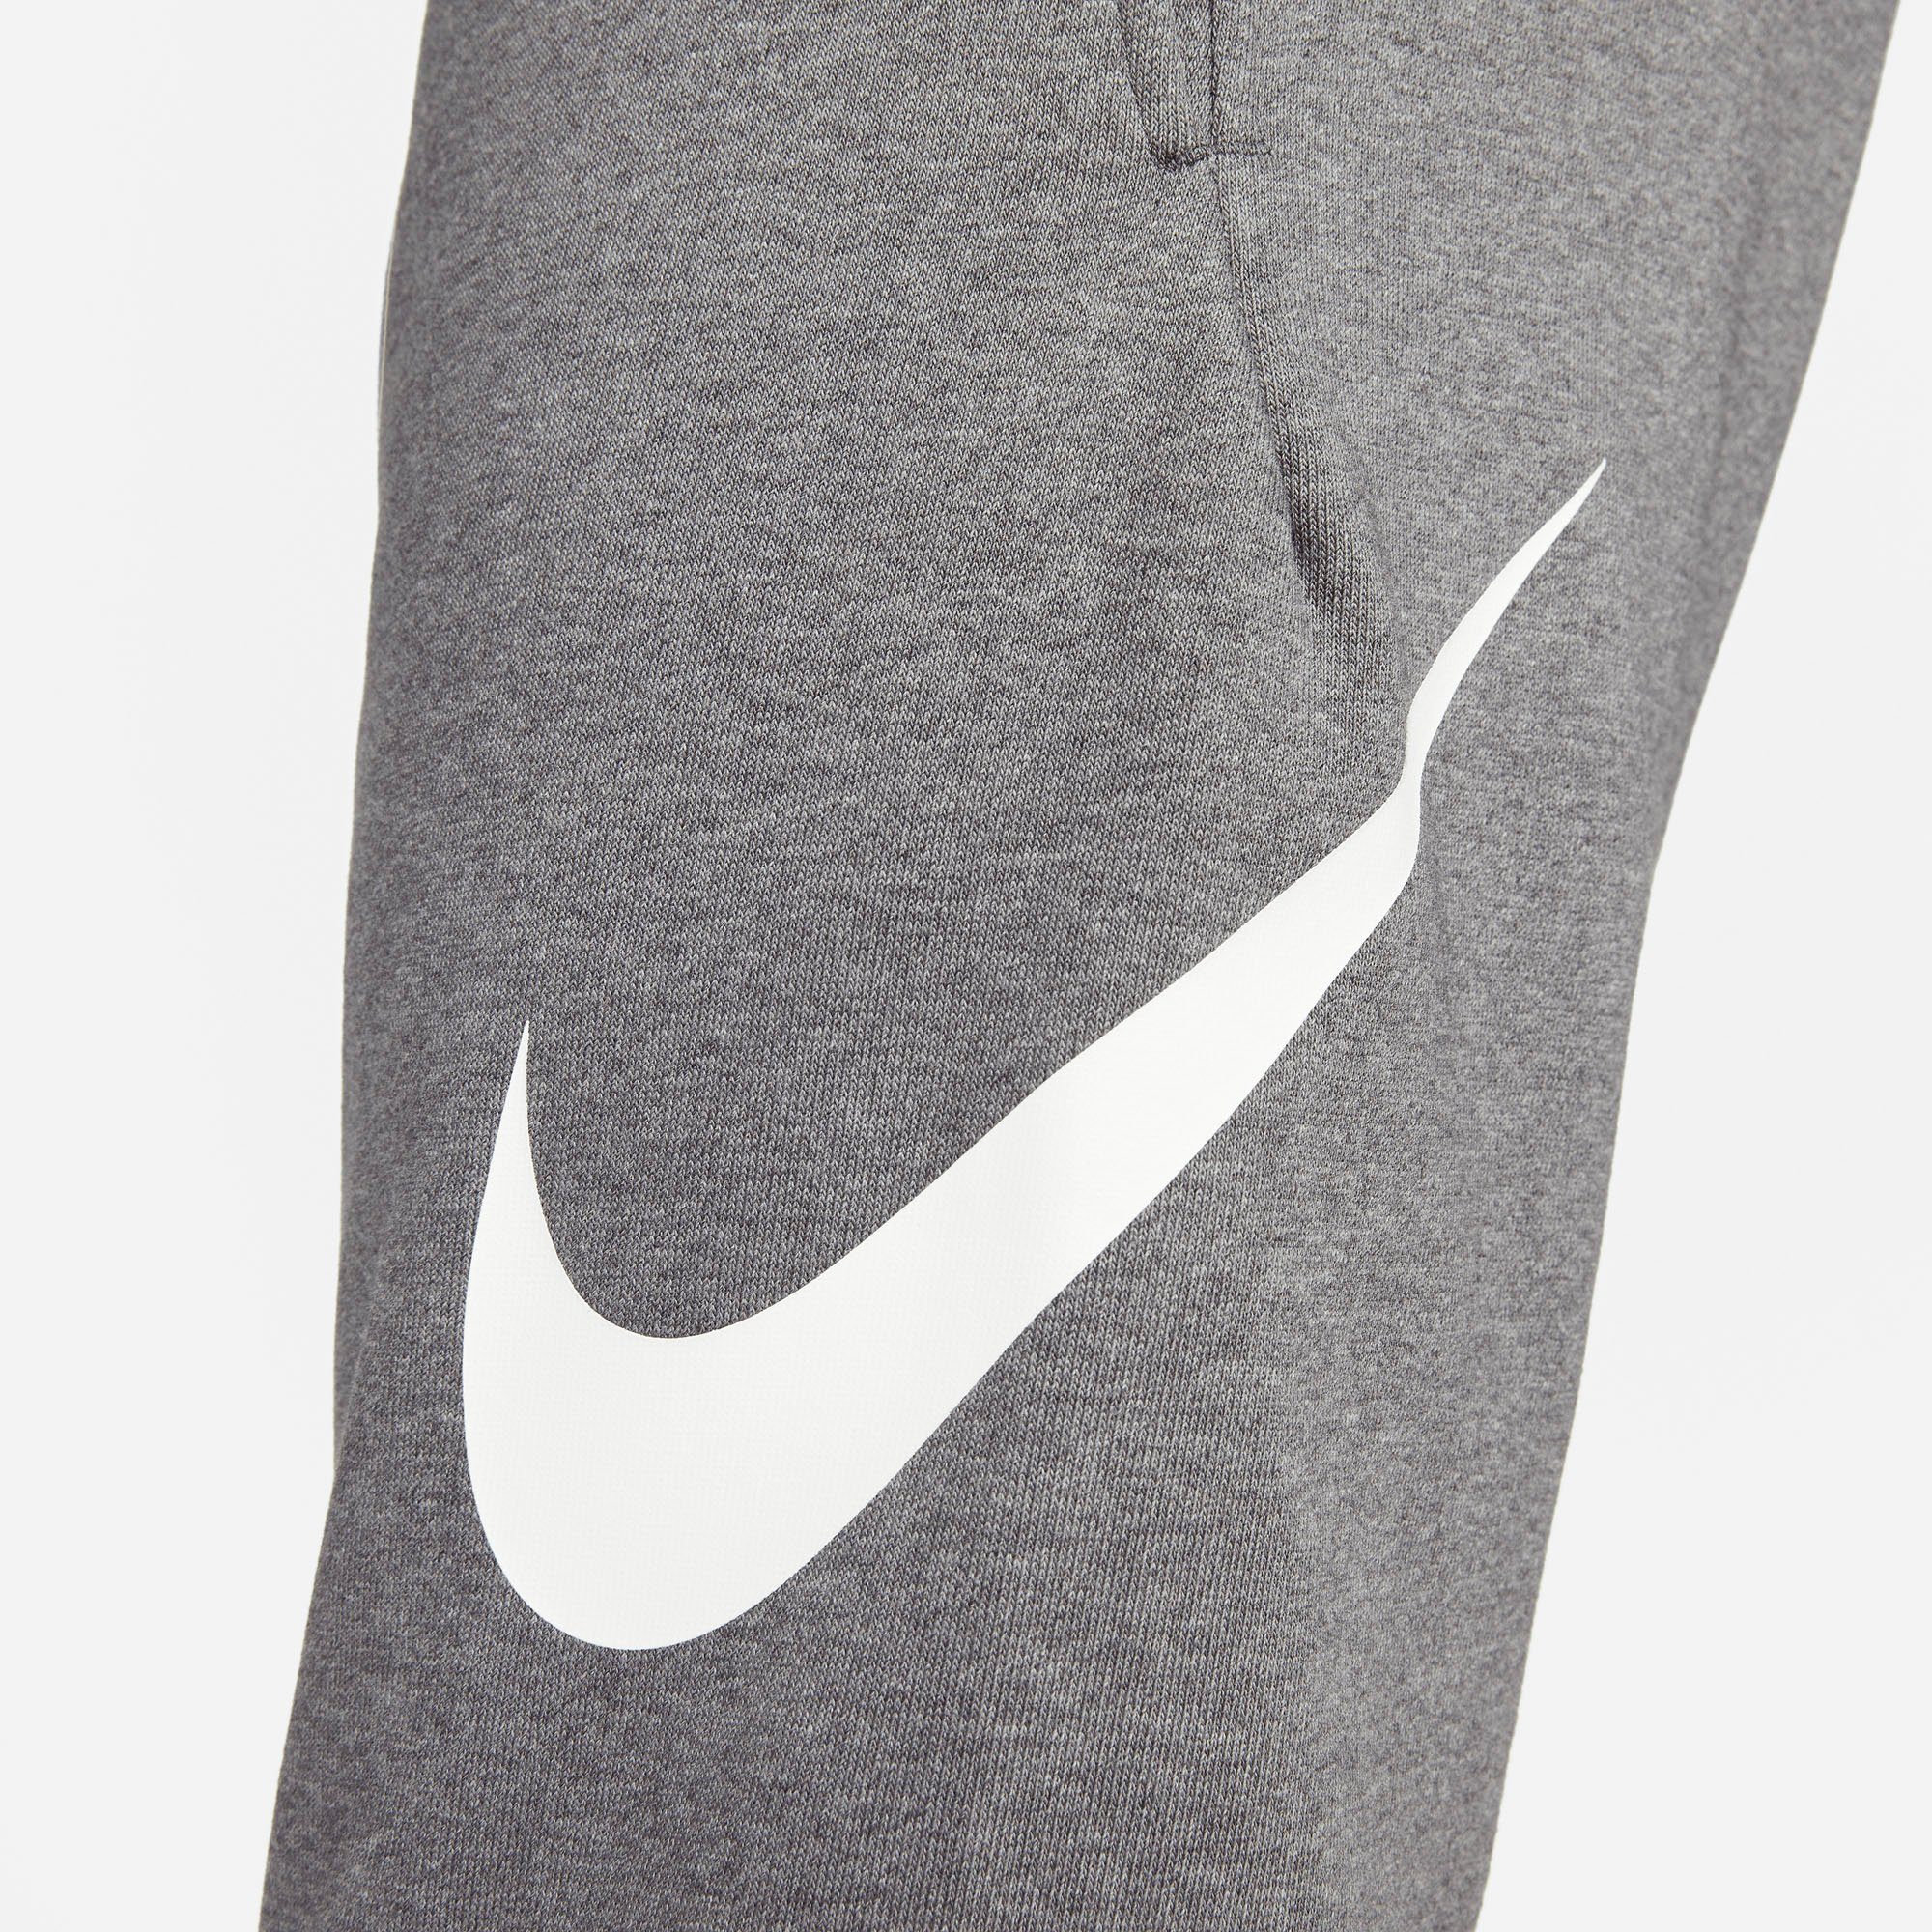 Nike Pants CHARCOAL HEATHR/WHITE Dri-FIT Trainingshose Training Men's Tapered